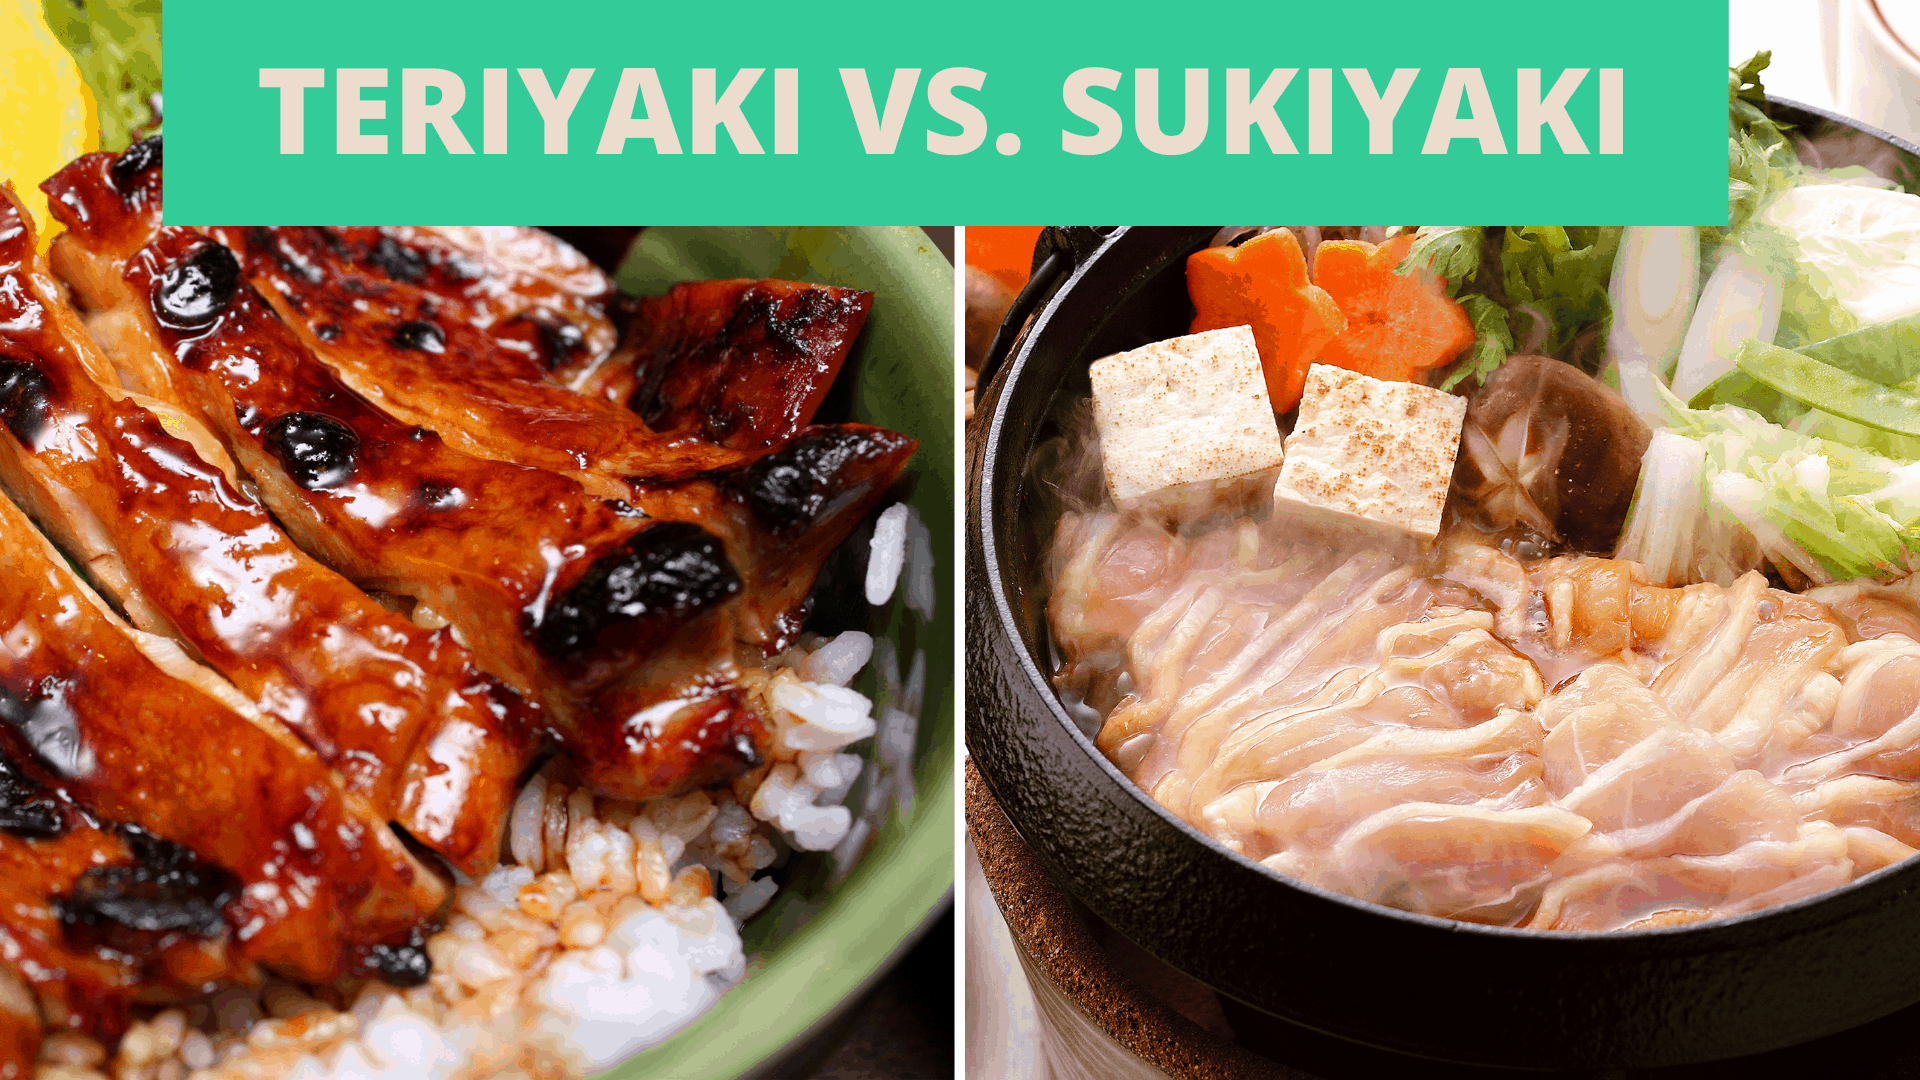 cymhariaeth teriyaki vs sukiyaki rhwng y ddwy saig Japaneaidd glasurol hyn